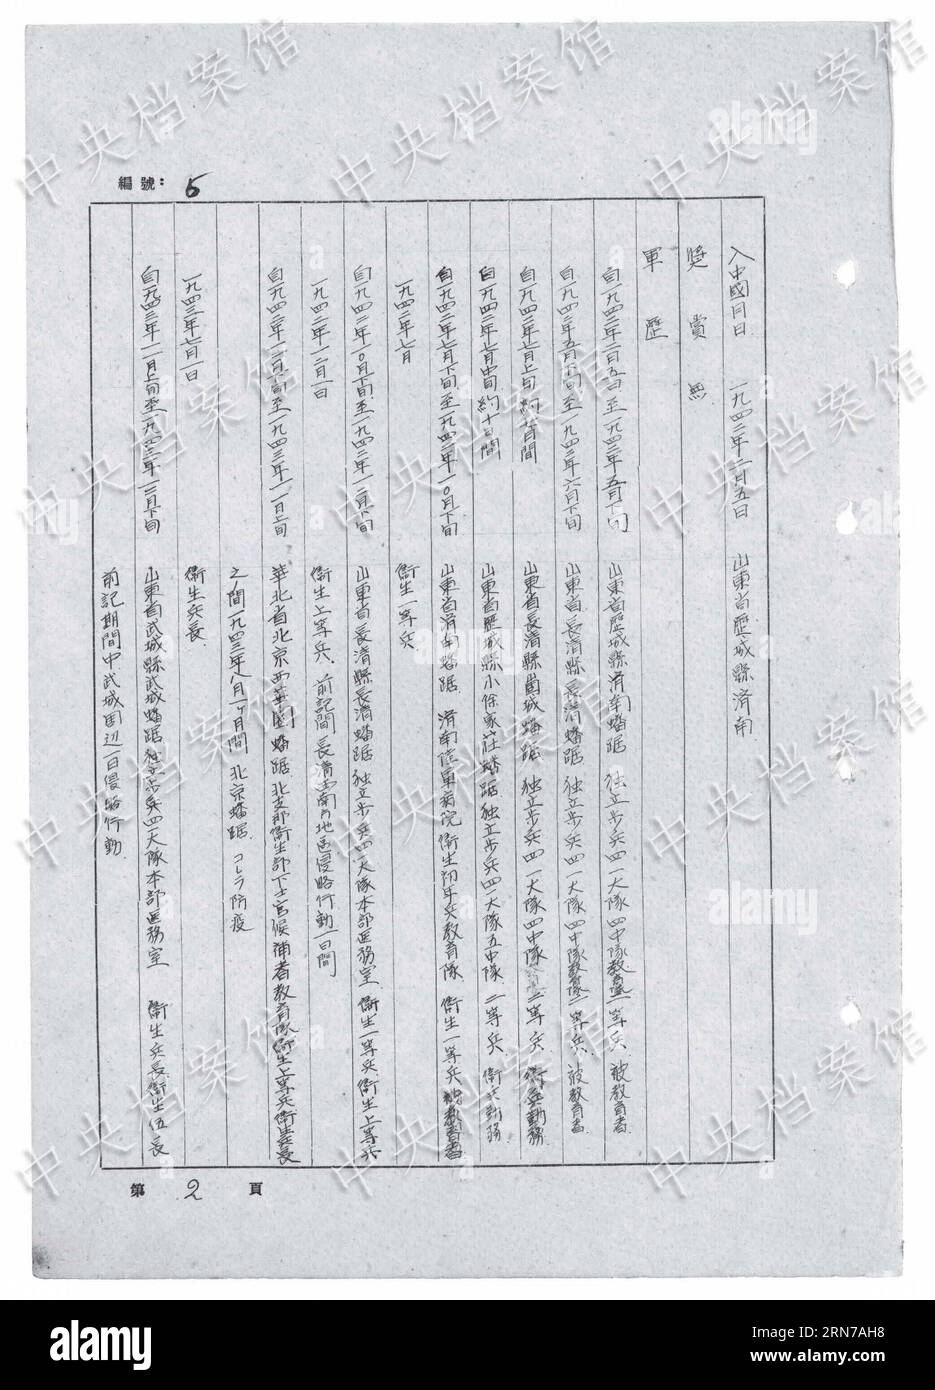 (150831) -- PEKING, 31. Aug. 2015 () -- Foto veröffentlicht am 31. Aug. 2015 von der Staatsarchivverwaltung Chinas auf ihrer Website zeigt einen Auszug aus dem handschriftlichen Geständnis des japanischen Kriegsverbrechers Tomokichi Nagata. Das 21. In einer Reihe von 31 handschriftlichen Geständnissen japanischer Kriegsverbrecher, die online veröffentlicht wurden, zeigt Tomokichi Nagata, der sich 1942 dem japanischen Angriffskrieg gegen China anschloss und im August 1945 gefangen genommen wurde. Nagata gestand, dass ich nach dem Einbruch in ein ziviles Haus in Peking im Jahr 1943 einen chinesischen Mann im Alter von etwa 50 Jahren gefunden habe, der unter schwerer Cholera leidet Stockfoto